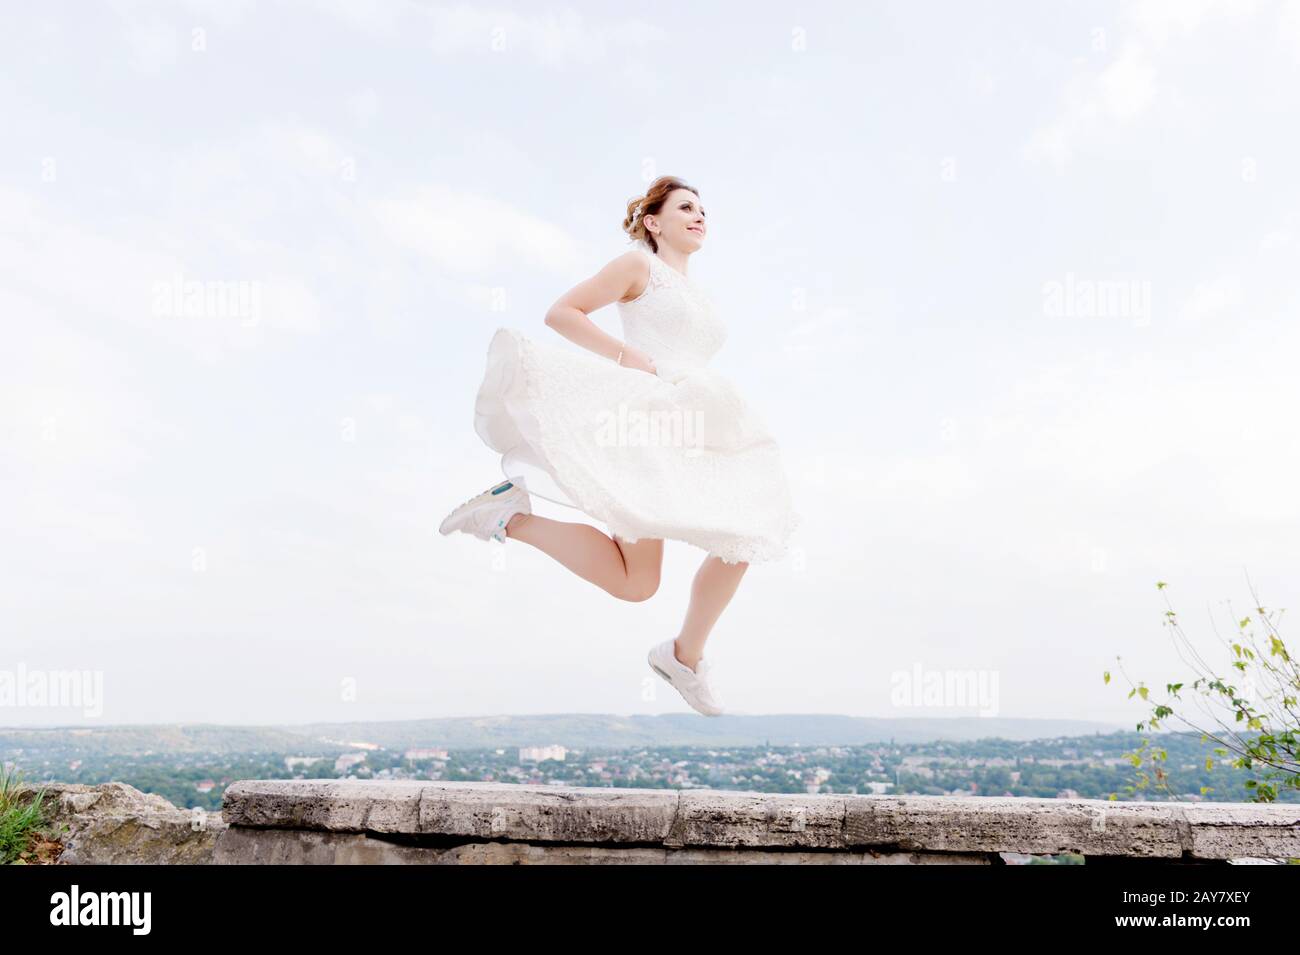 La folle mariée saute et s'accroche dans le ciel en toile de fond du paysage urbain d'une petite station balnéaire dans le nord du Caucase Banque D'Images